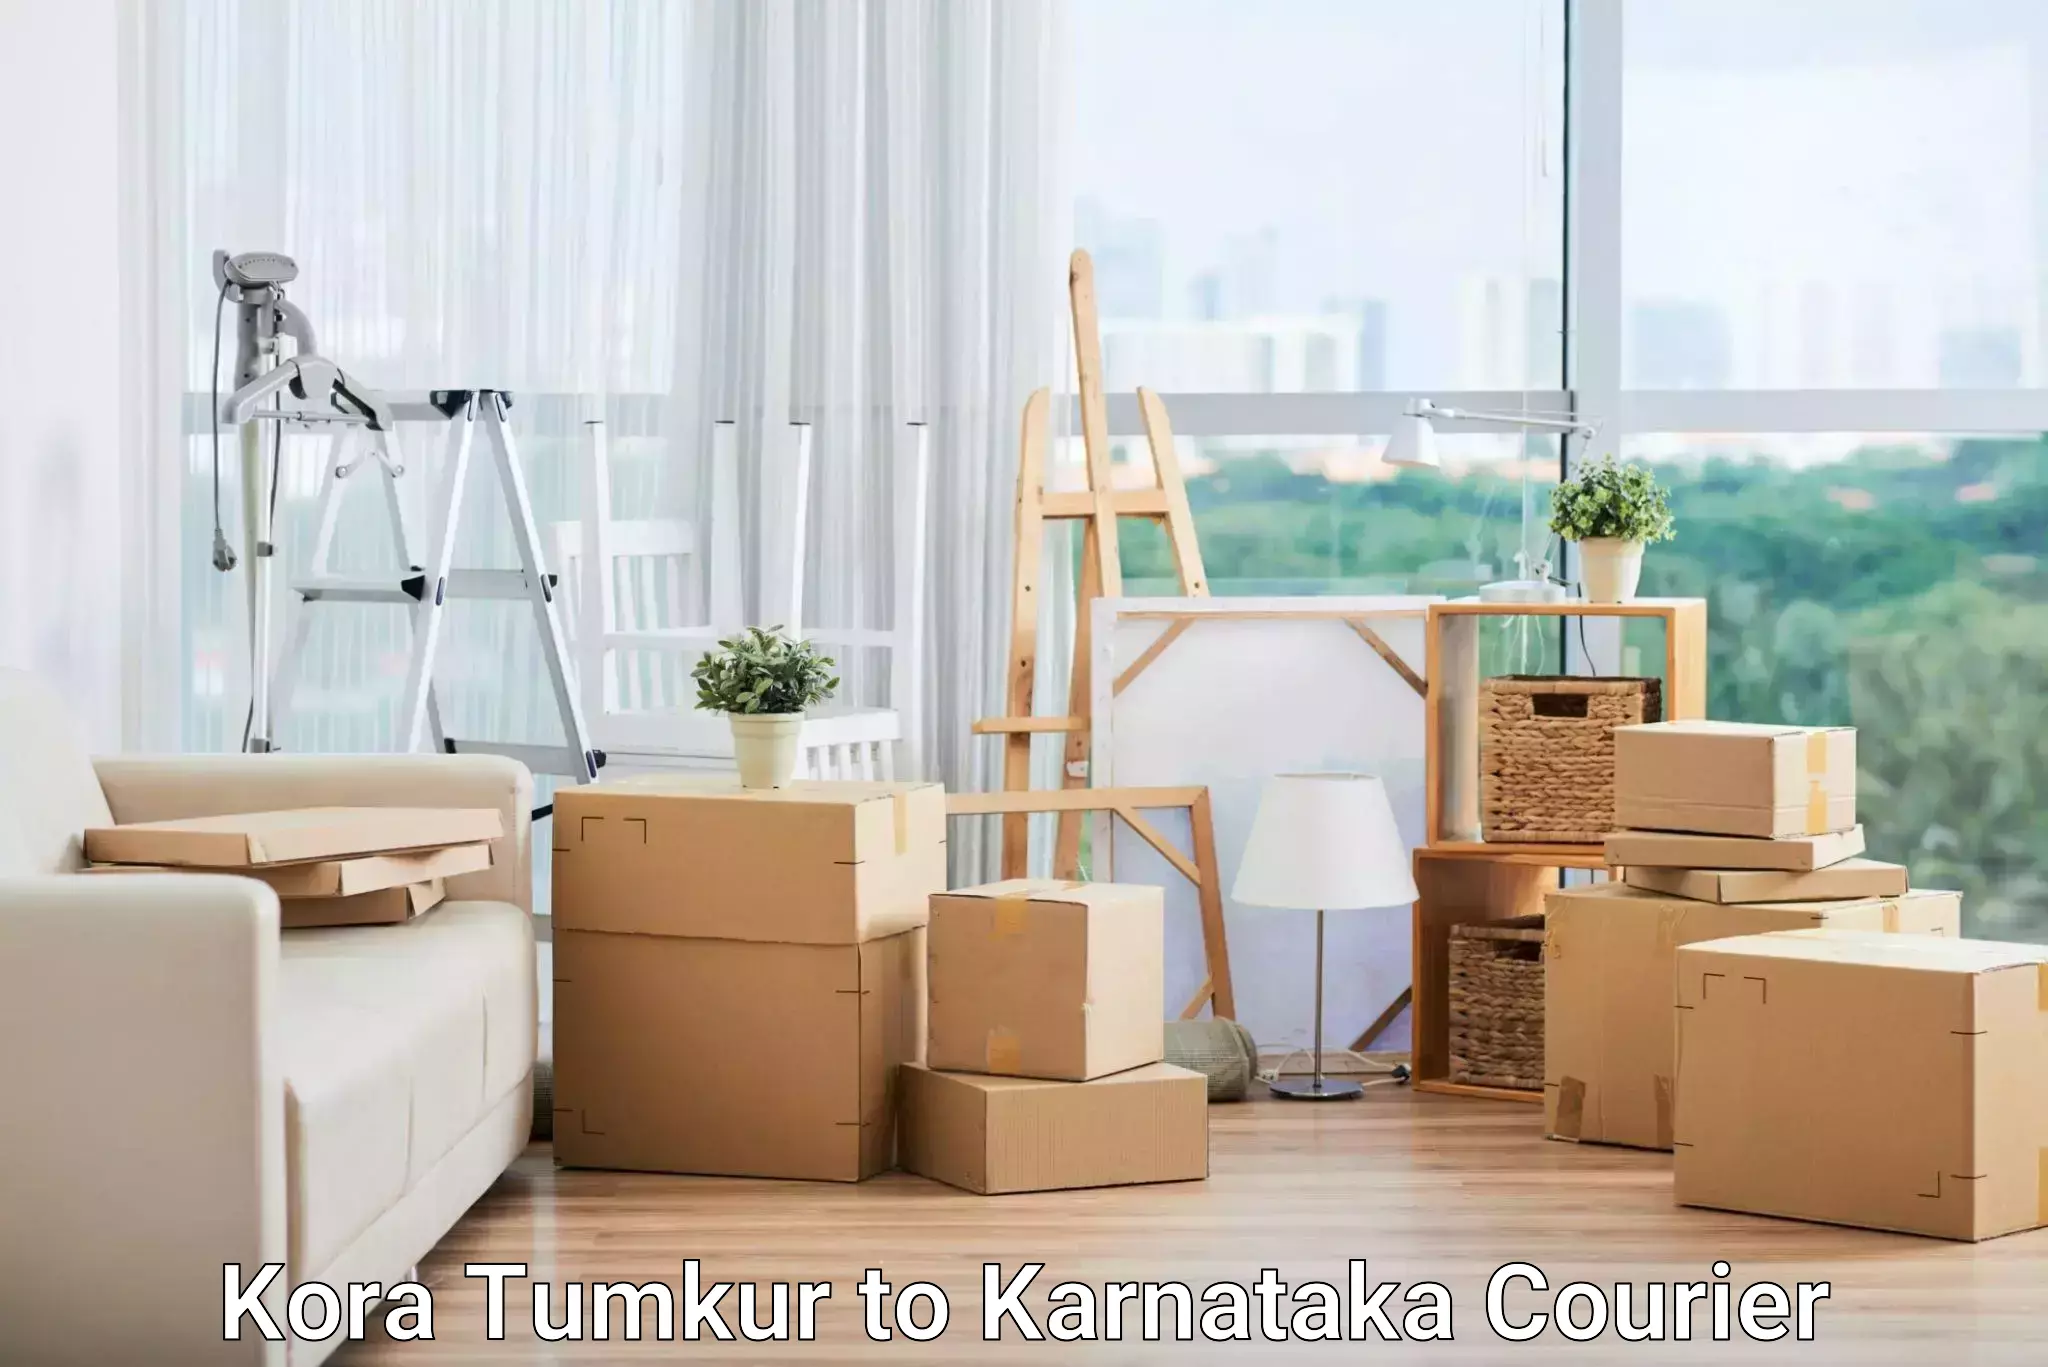 Specialized courier services Kora Tumkur to Karnataka